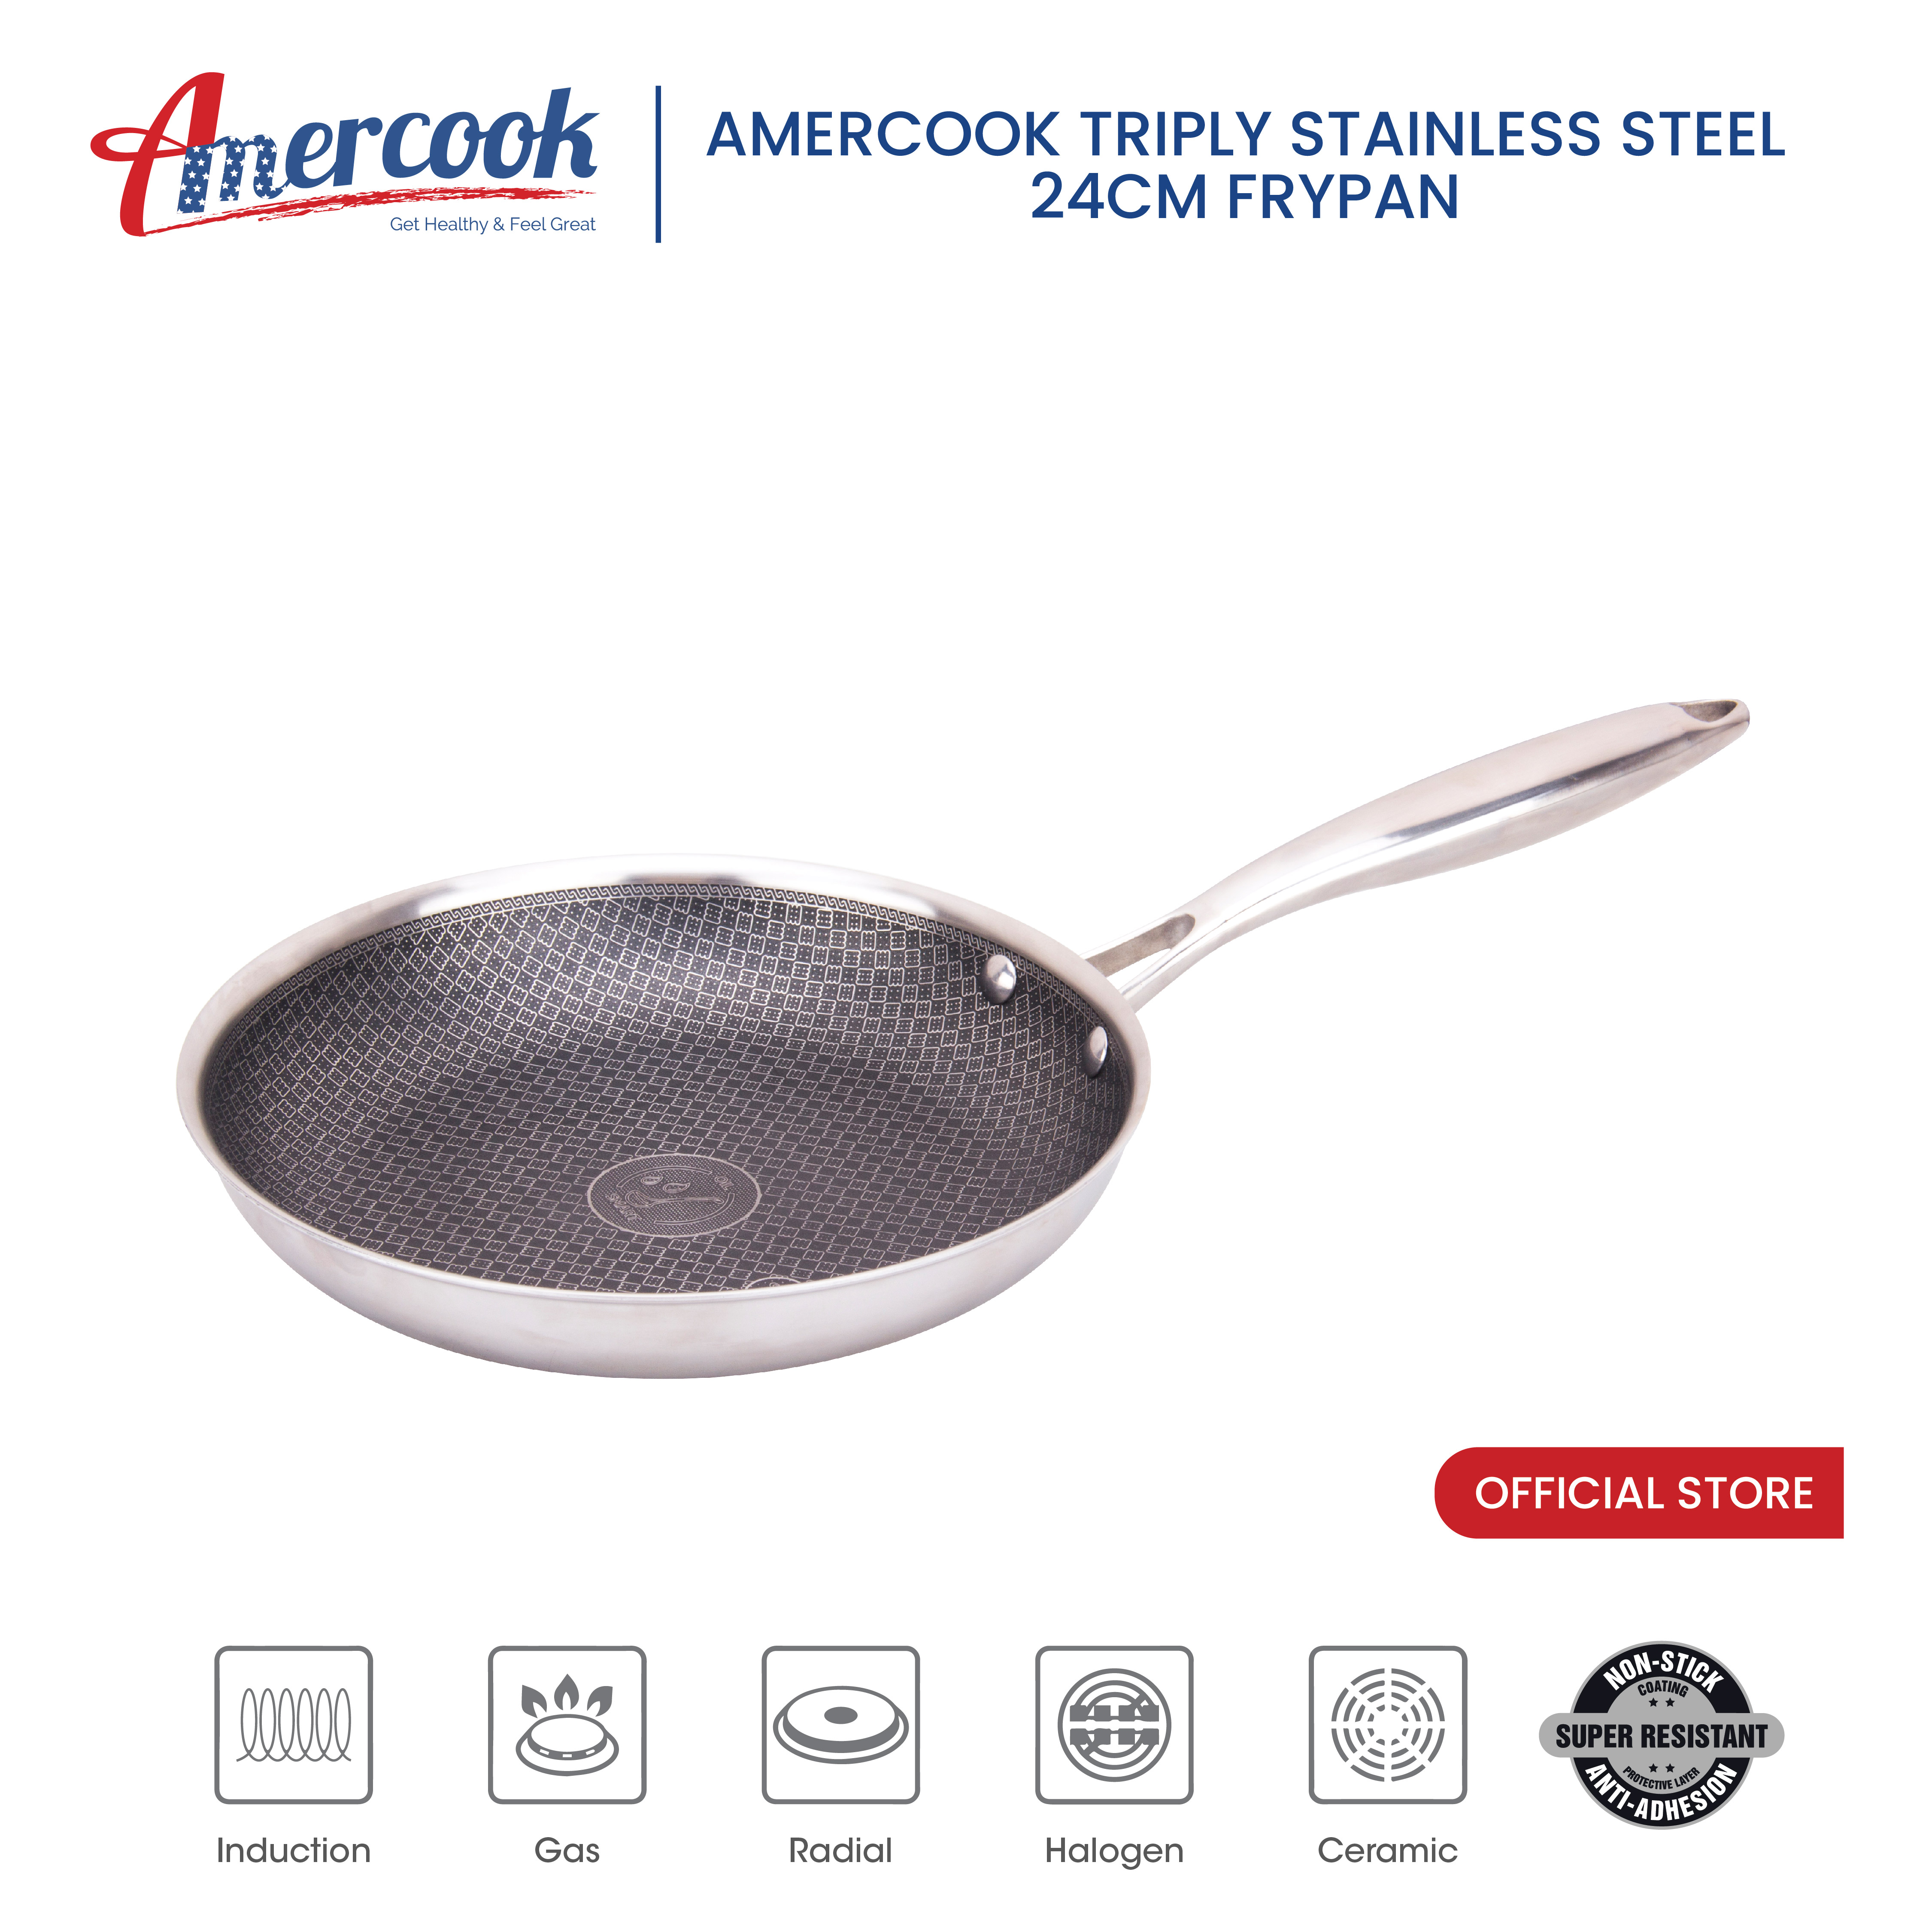 AMERCOOK TRIPLY STAINLESS STEEL 24CM FRY PAN - ARST-0124